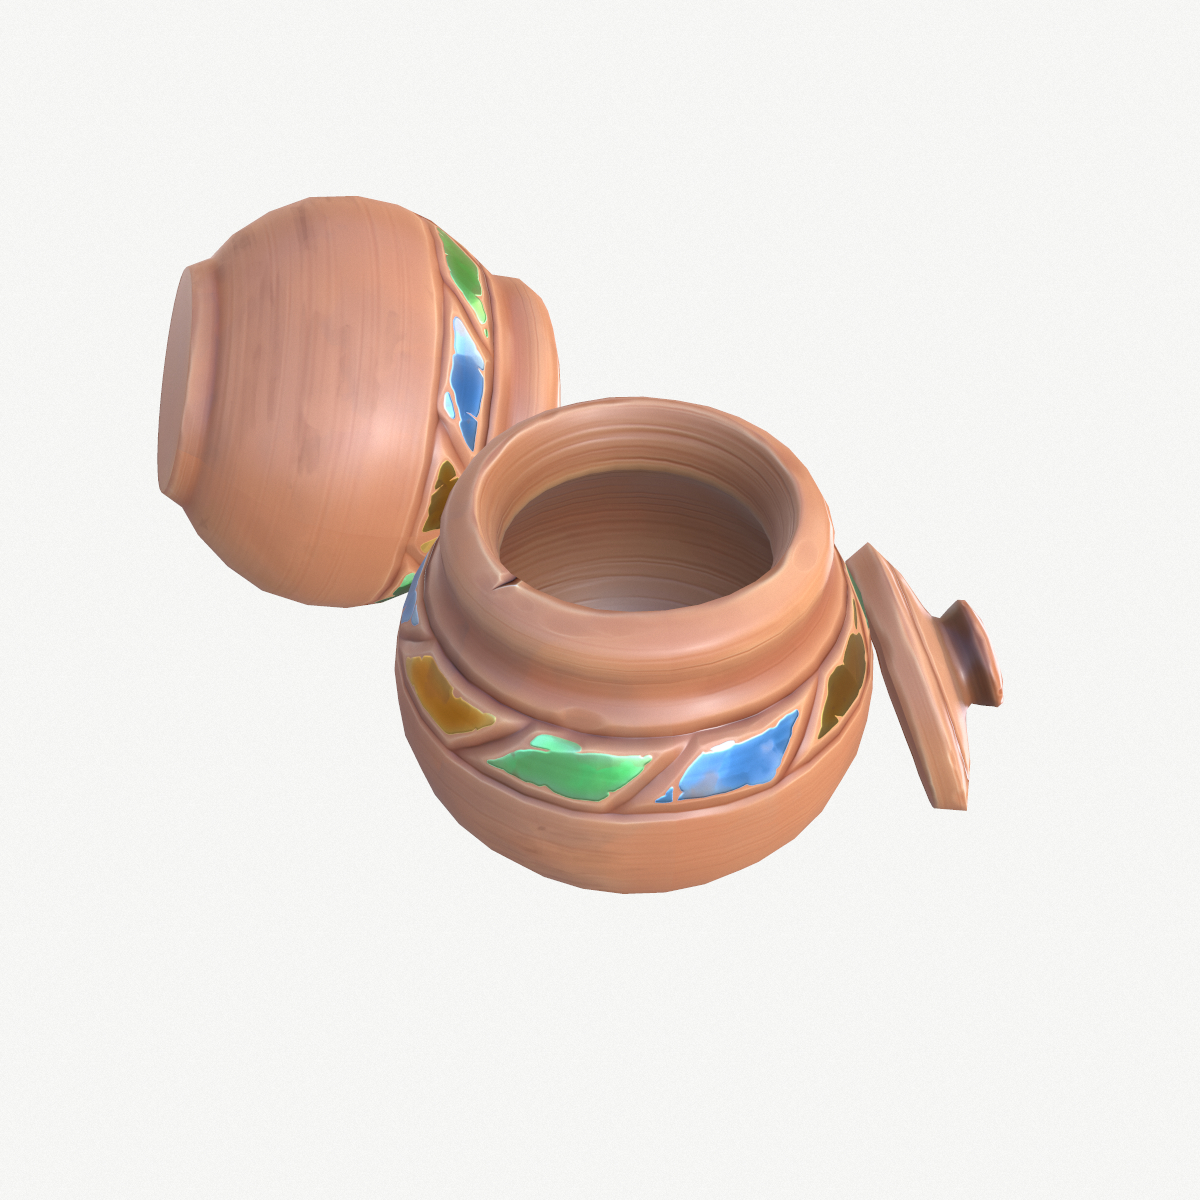  Stylized  small pot  3D  model TurboSquid 1596649